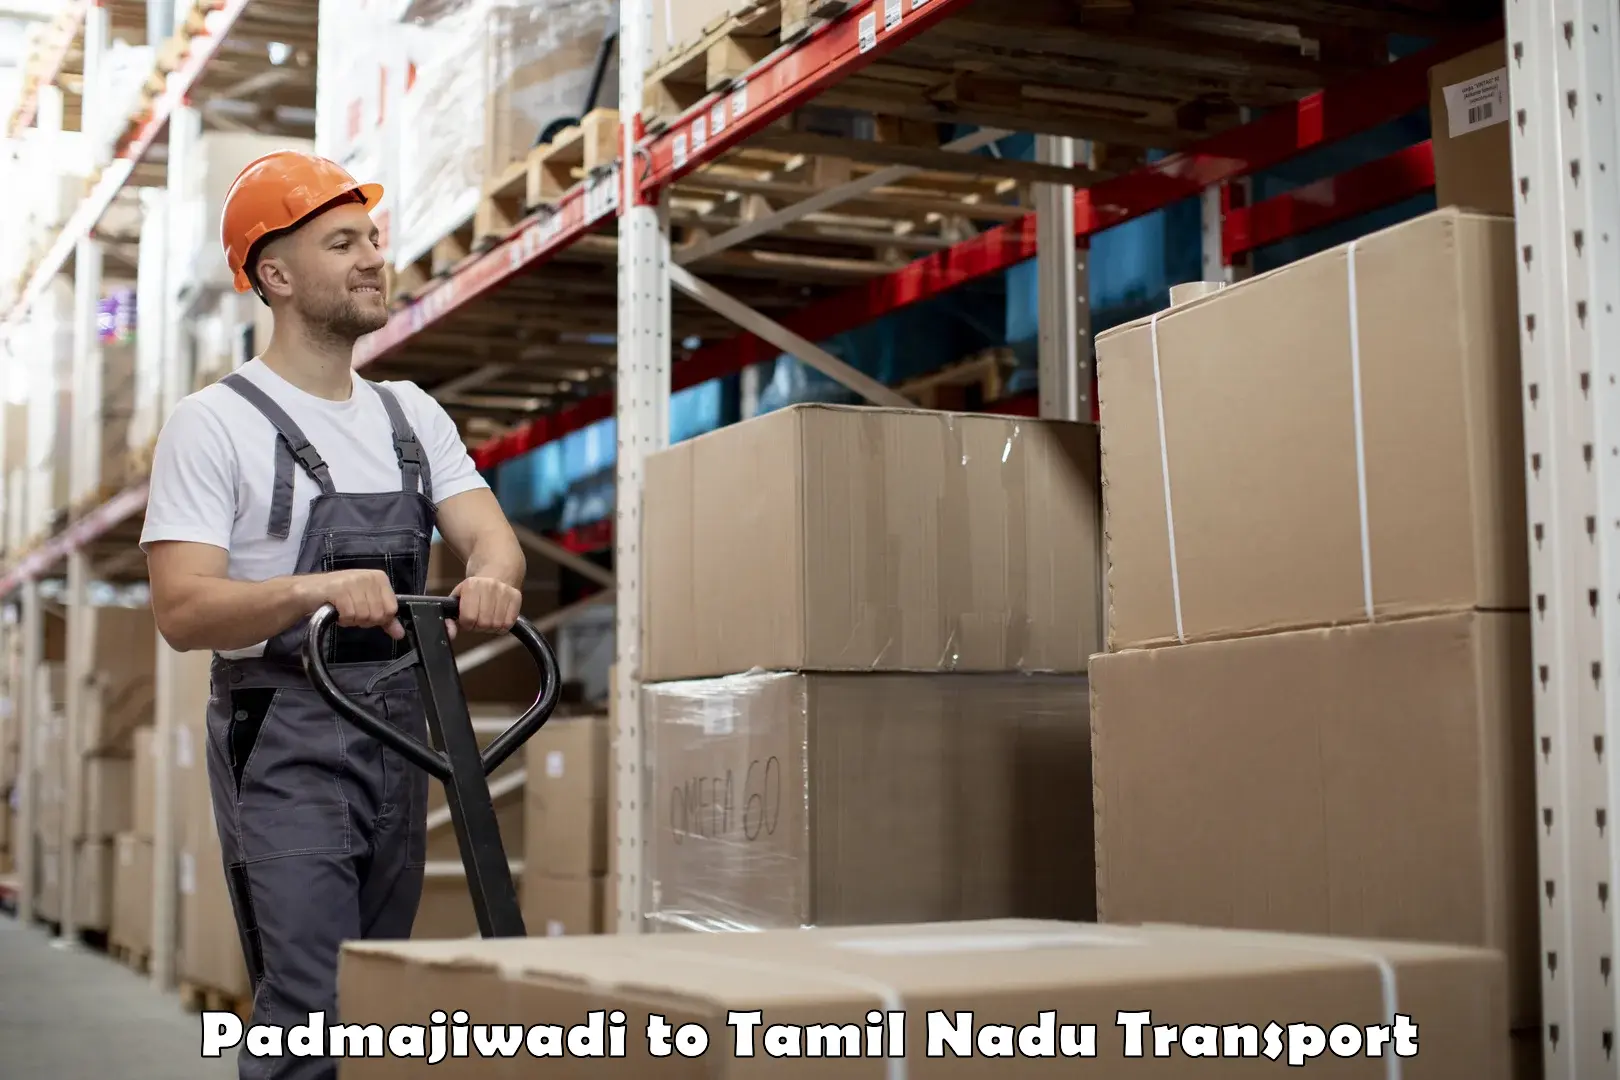 Delivery service Padmajiwadi to Bhavani